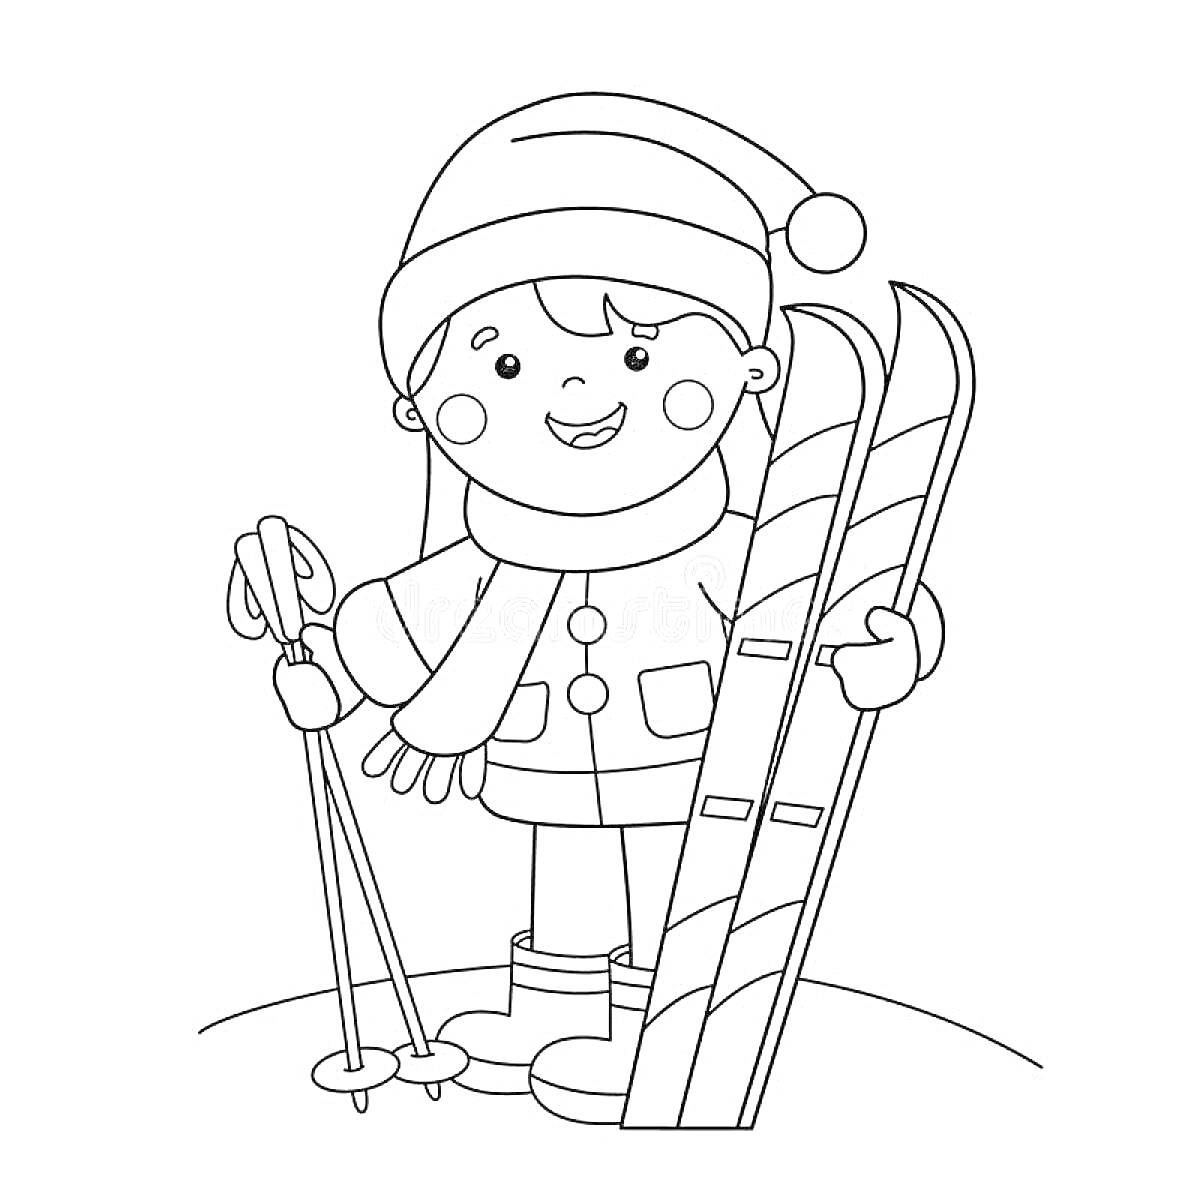 Раскраска Ребёнок со лыжами, палками, в тёплой одежде на снегу